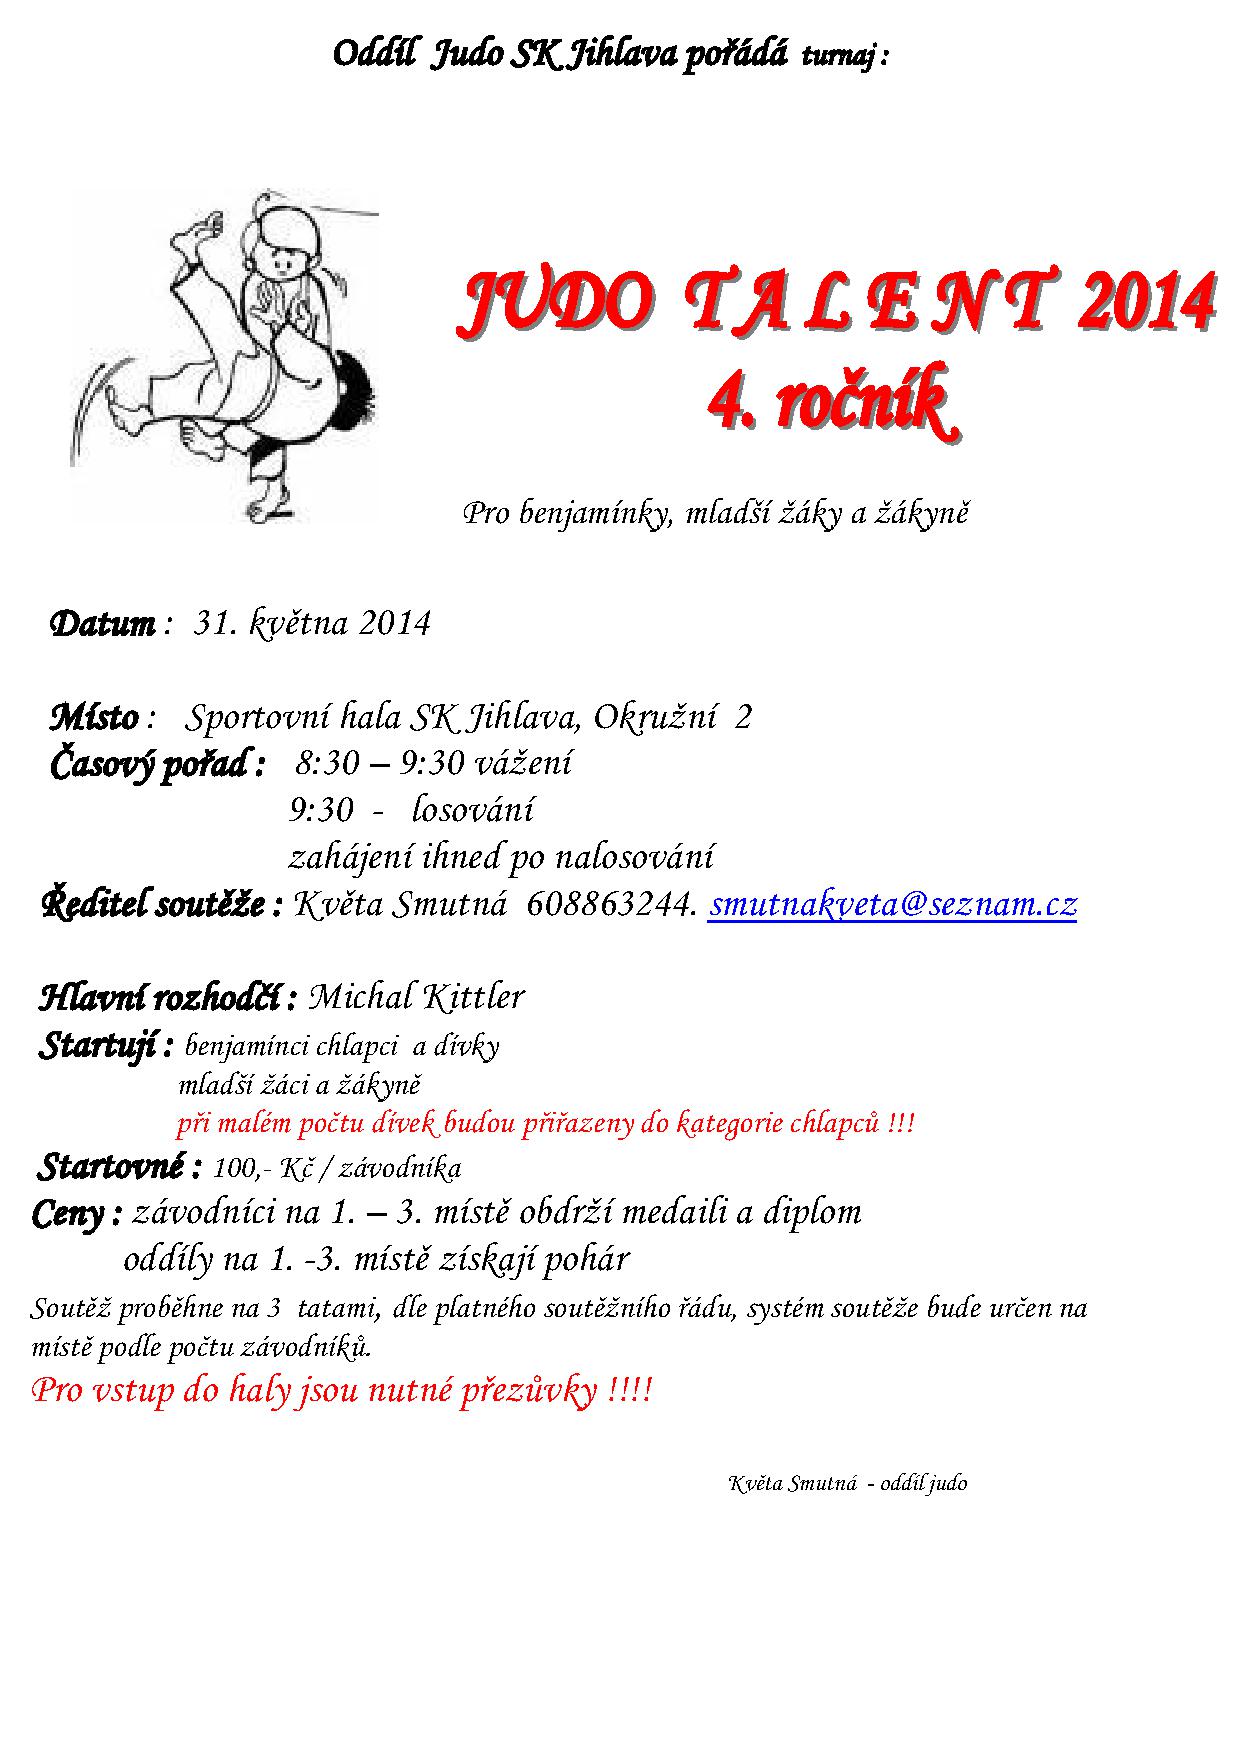 judo talent_14_ji_1